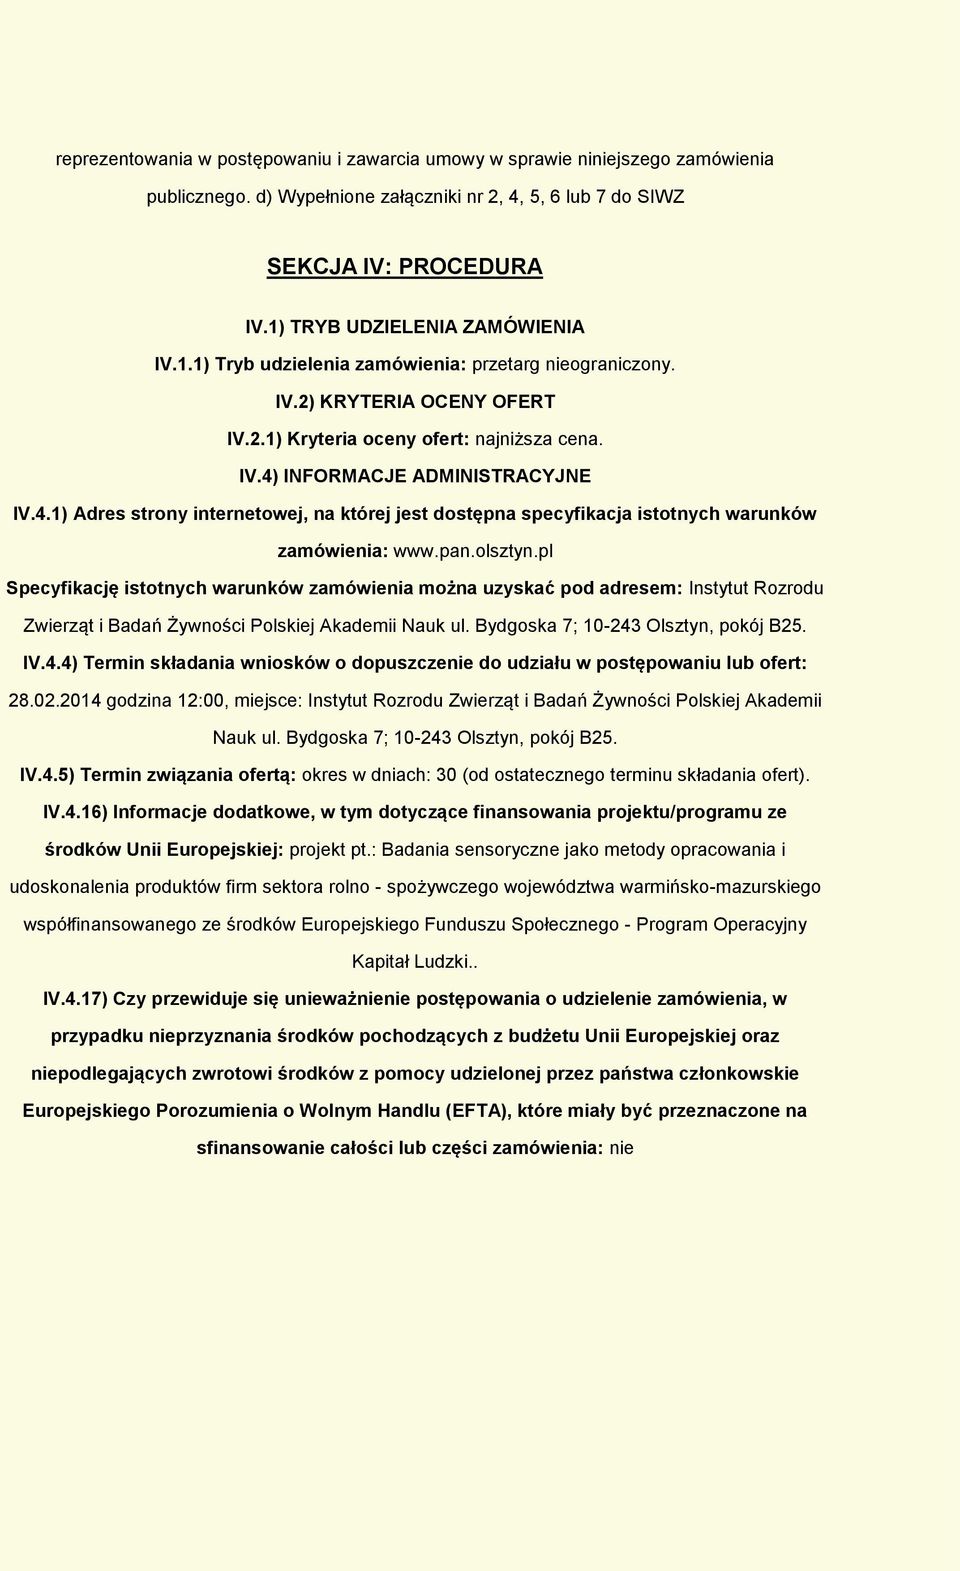 4.1) Adres strony internetowej, na której jest dostępna specyfikacja istotnych warunków zamówienia: www.pan.olsztyn.